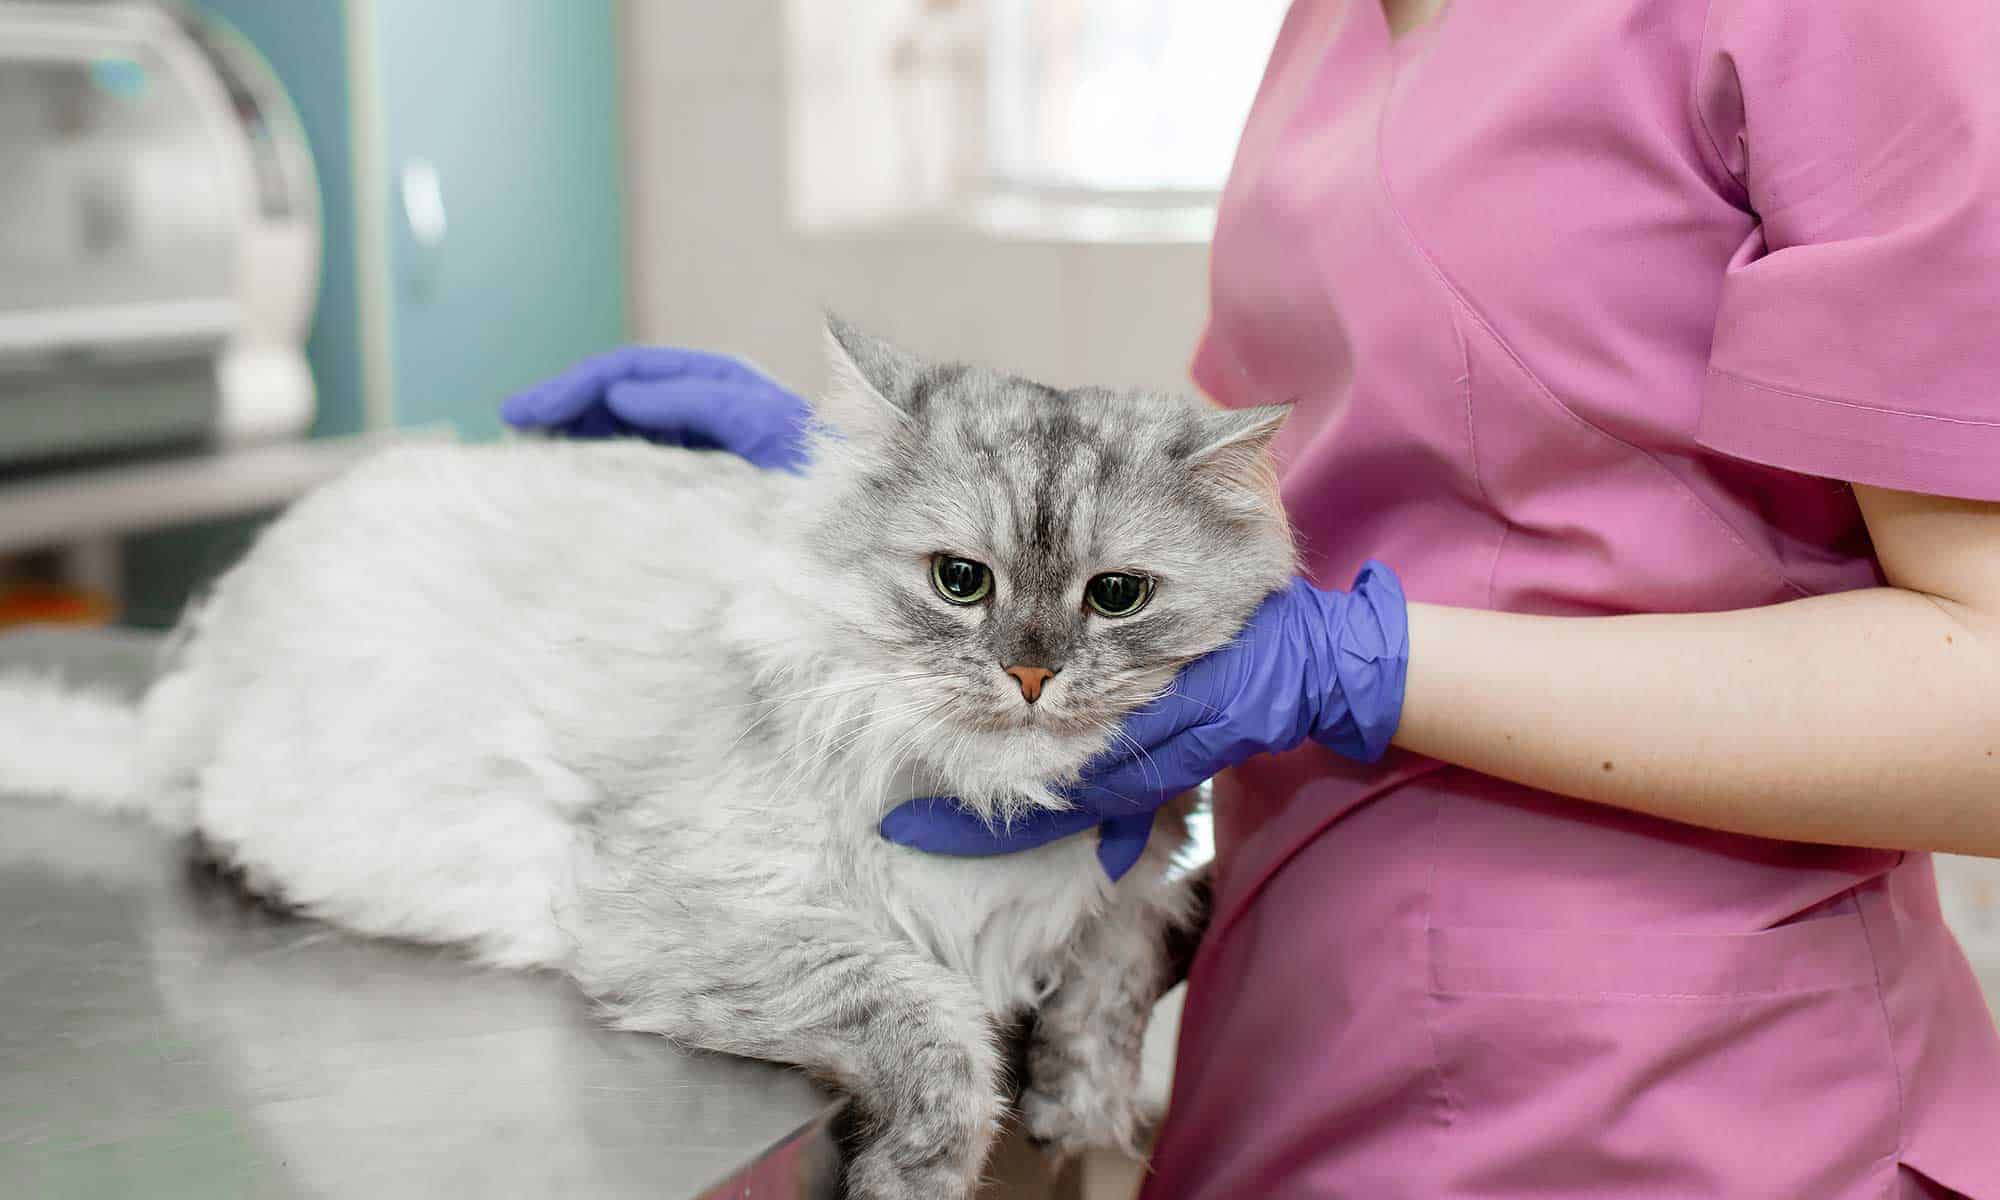 A vet tech holding a feline patient